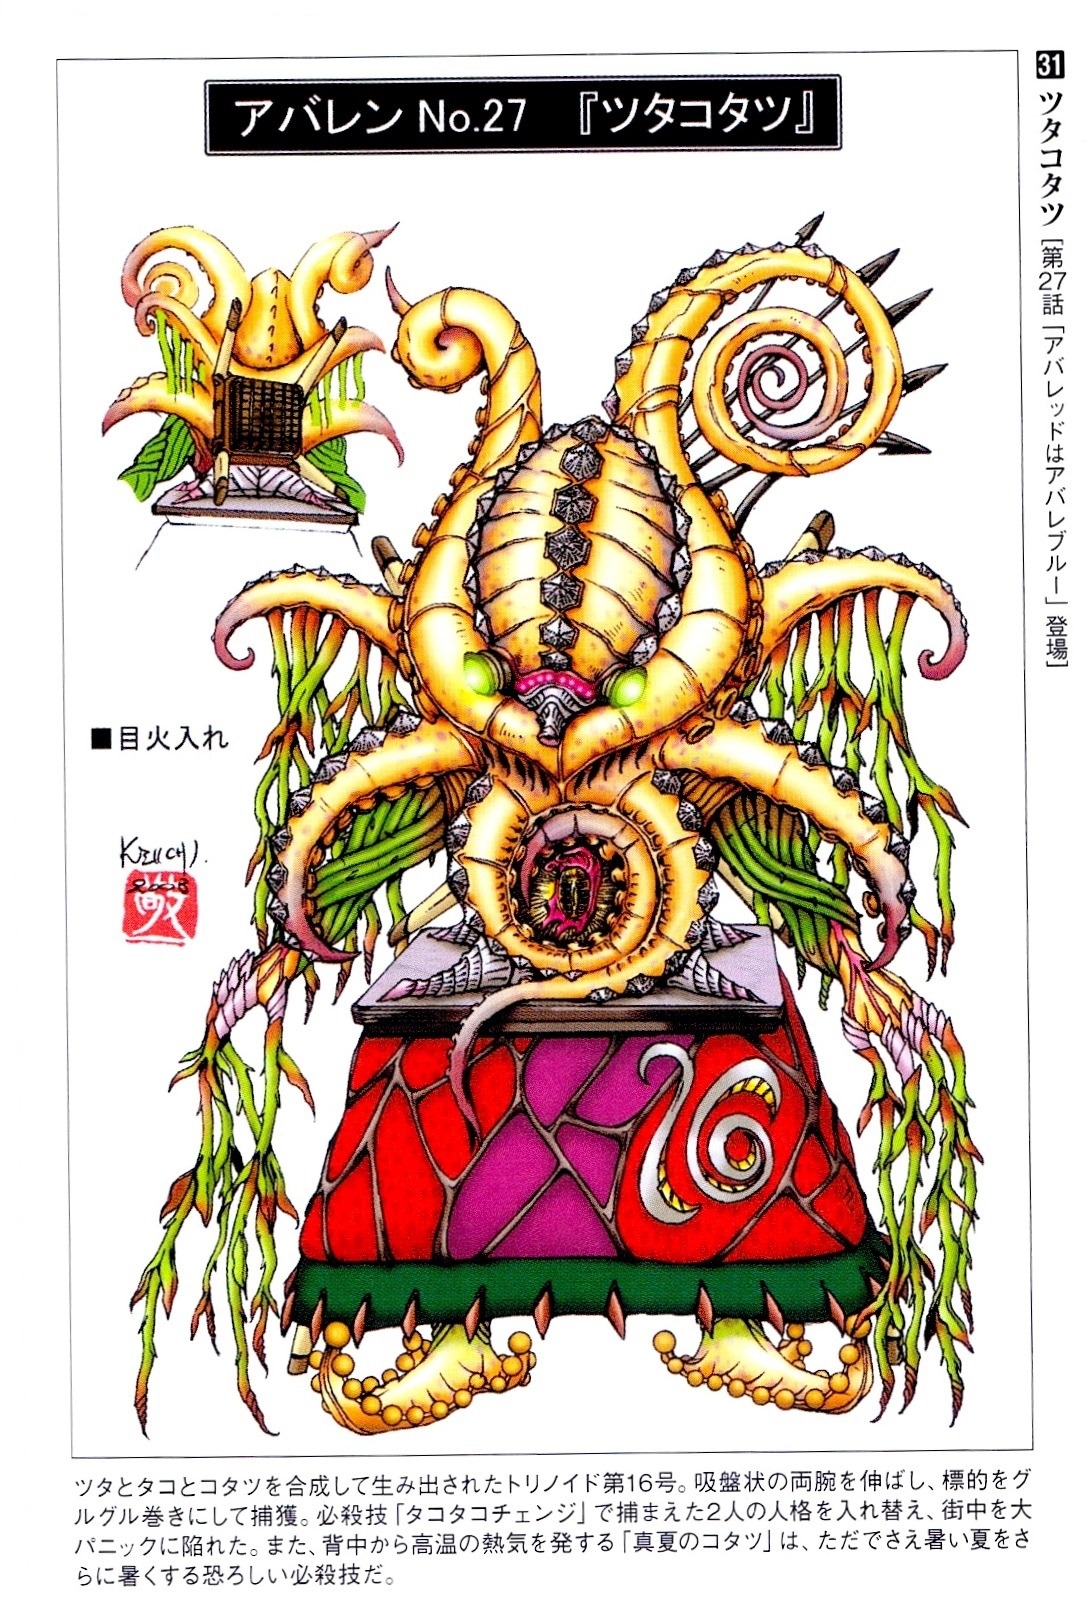 Crazy Monster Design — Trinoid 16: Tsutakotatsu from Bakuryuu 